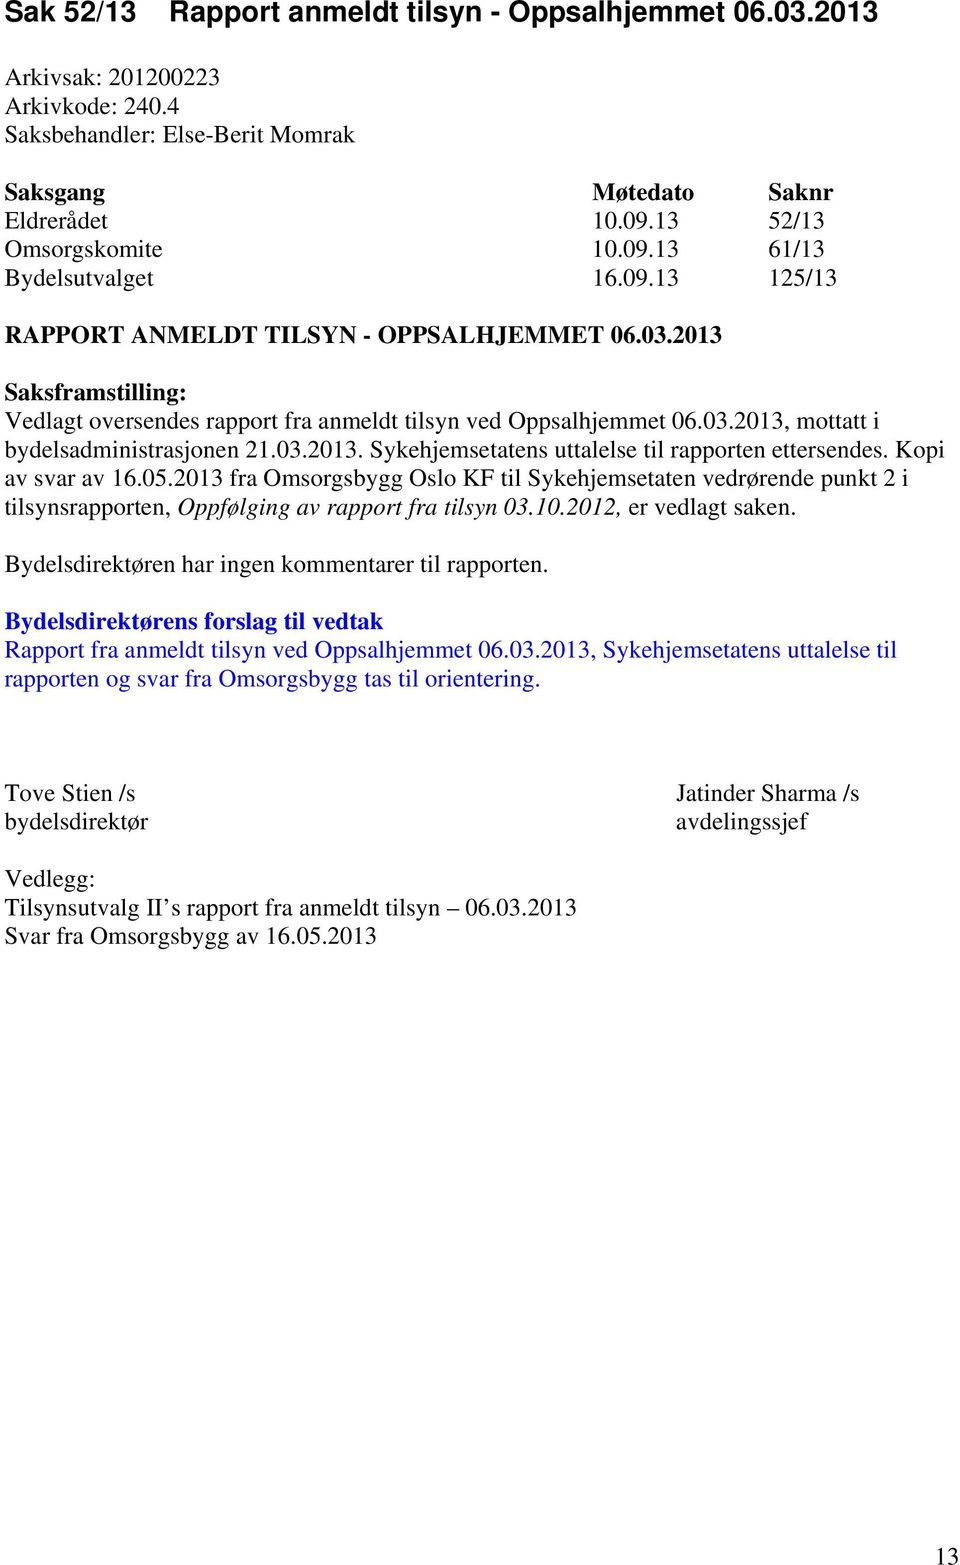 Kopi av svar av 16.05.013 fra Omsorgsbygg Oslo KF til Sykehjemsetaten vedrørende punkt i tilsynsrapporten, Oppfølging av rapport fra tilsyn 03.10.01, er vedlagt saken.